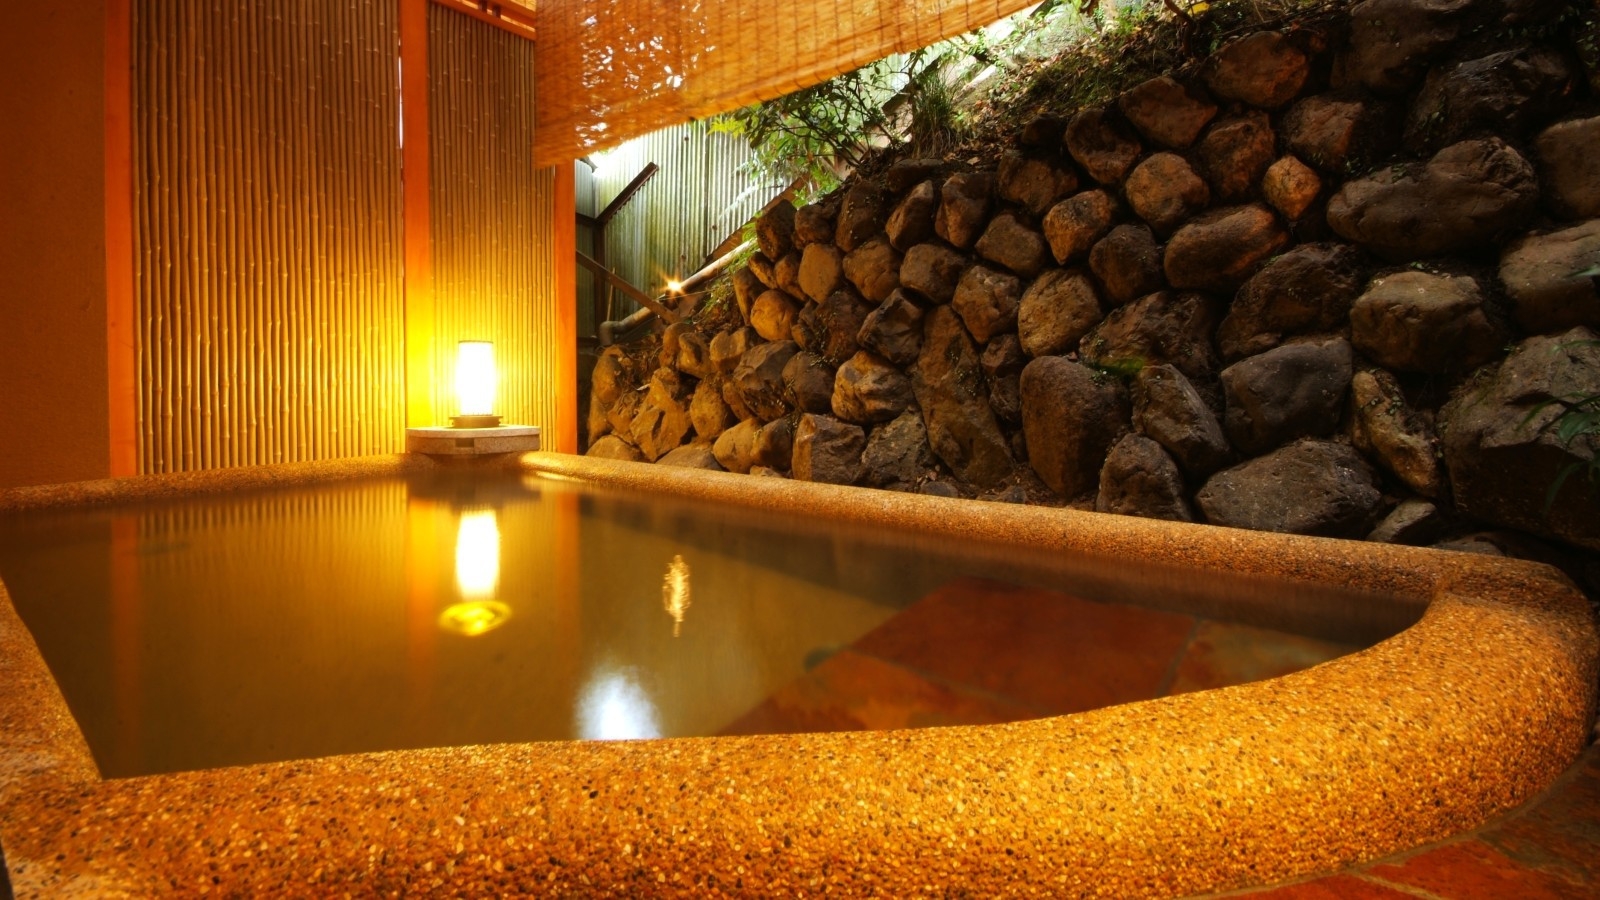 【基本プラン】京都嵐山にて。趣向を凝らした月替り京懐石と展望露天風呂を満喫【2食付・夕食はお部屋食】